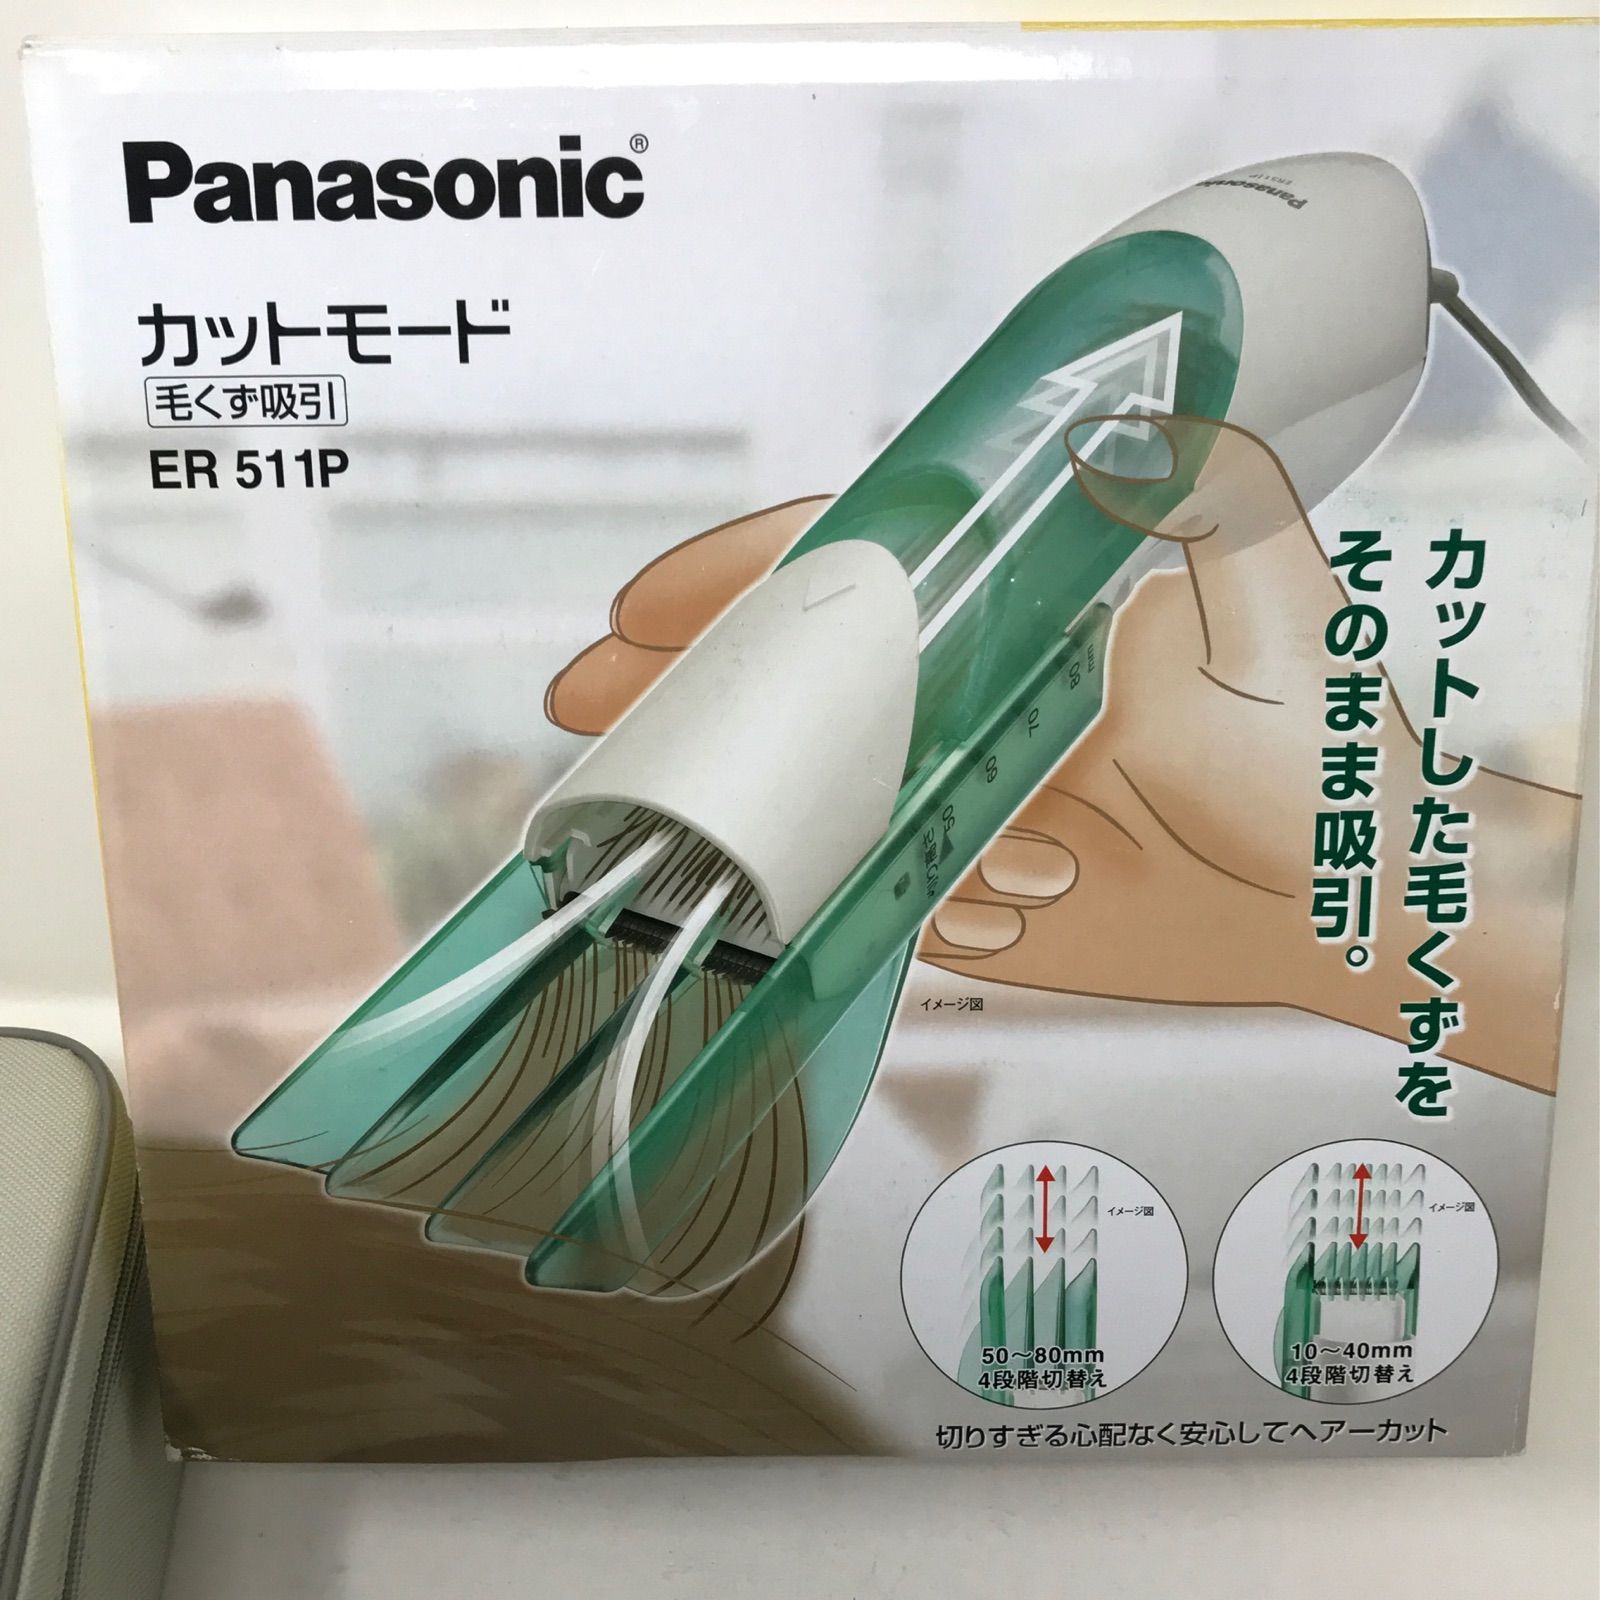 Panasonic カットモード 毛くず吸引 ER511P パナソニック バリカン